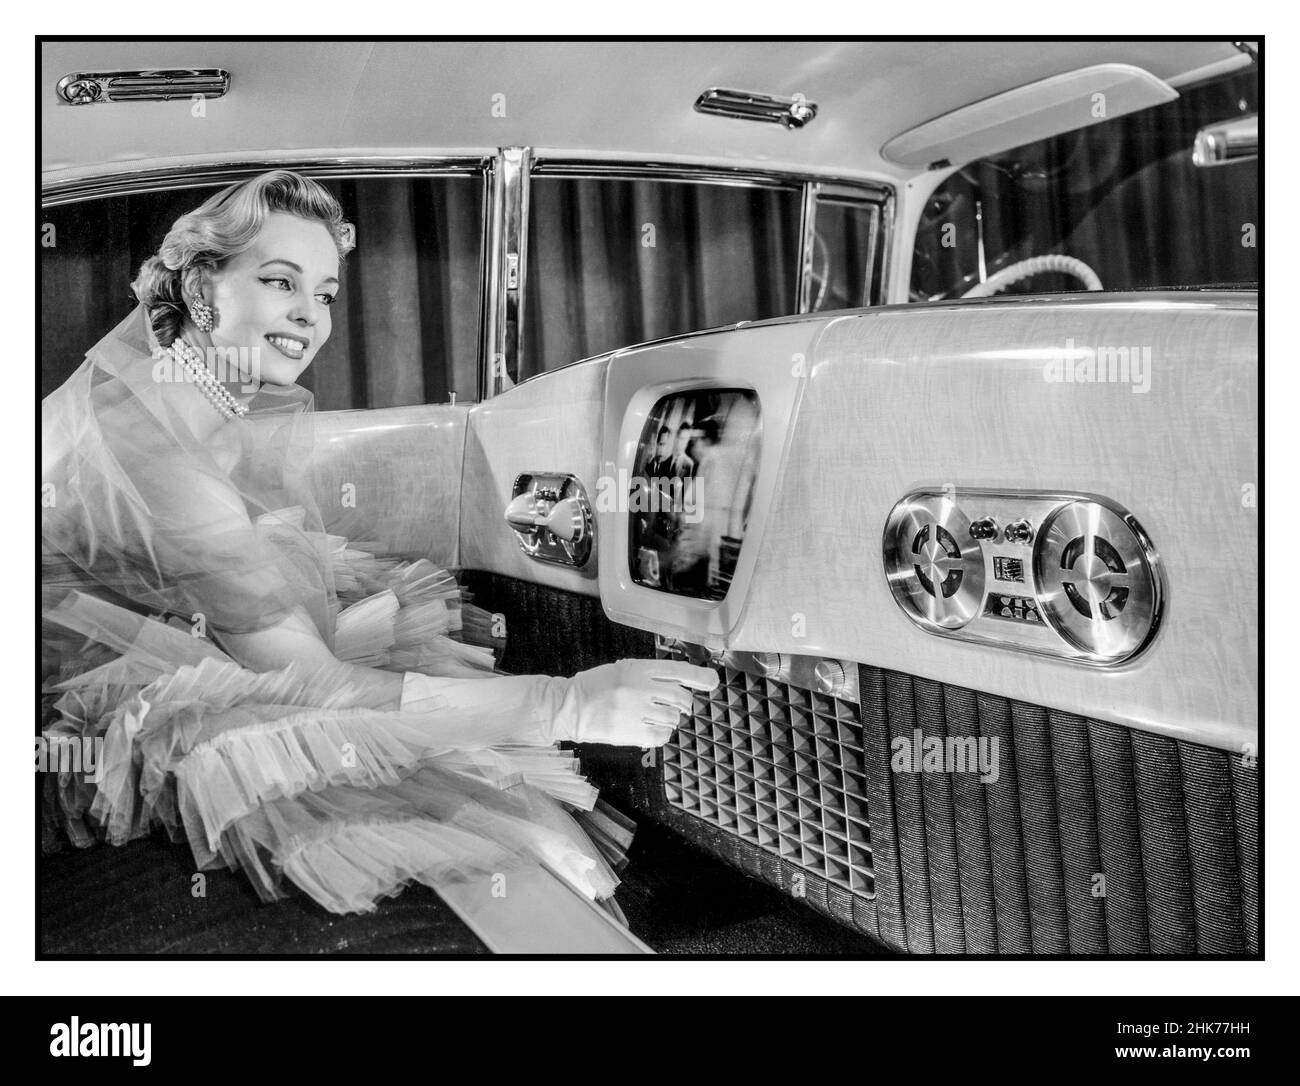 Vintage 1955 Cadillac Westchester Luxus-Innenraum-Auto Auto mit Telefon, Tonbandgerät und 14' TV Automobile Car Show, mit weiblichem Modell demonstriert eine Vision der Automobil-Zukunft mit Luxus-Zubehör wie in-Car-TV-Telefon 14-Zoll-Fernseher, ein Telefon, Tonbandgerät, Und Korina-Goldholzvertäfelung unter den ungewöhnlichen Luxusmerkmalen des Cadillac Westchester Showcar aus dem Jahr 1955 Stockfoto